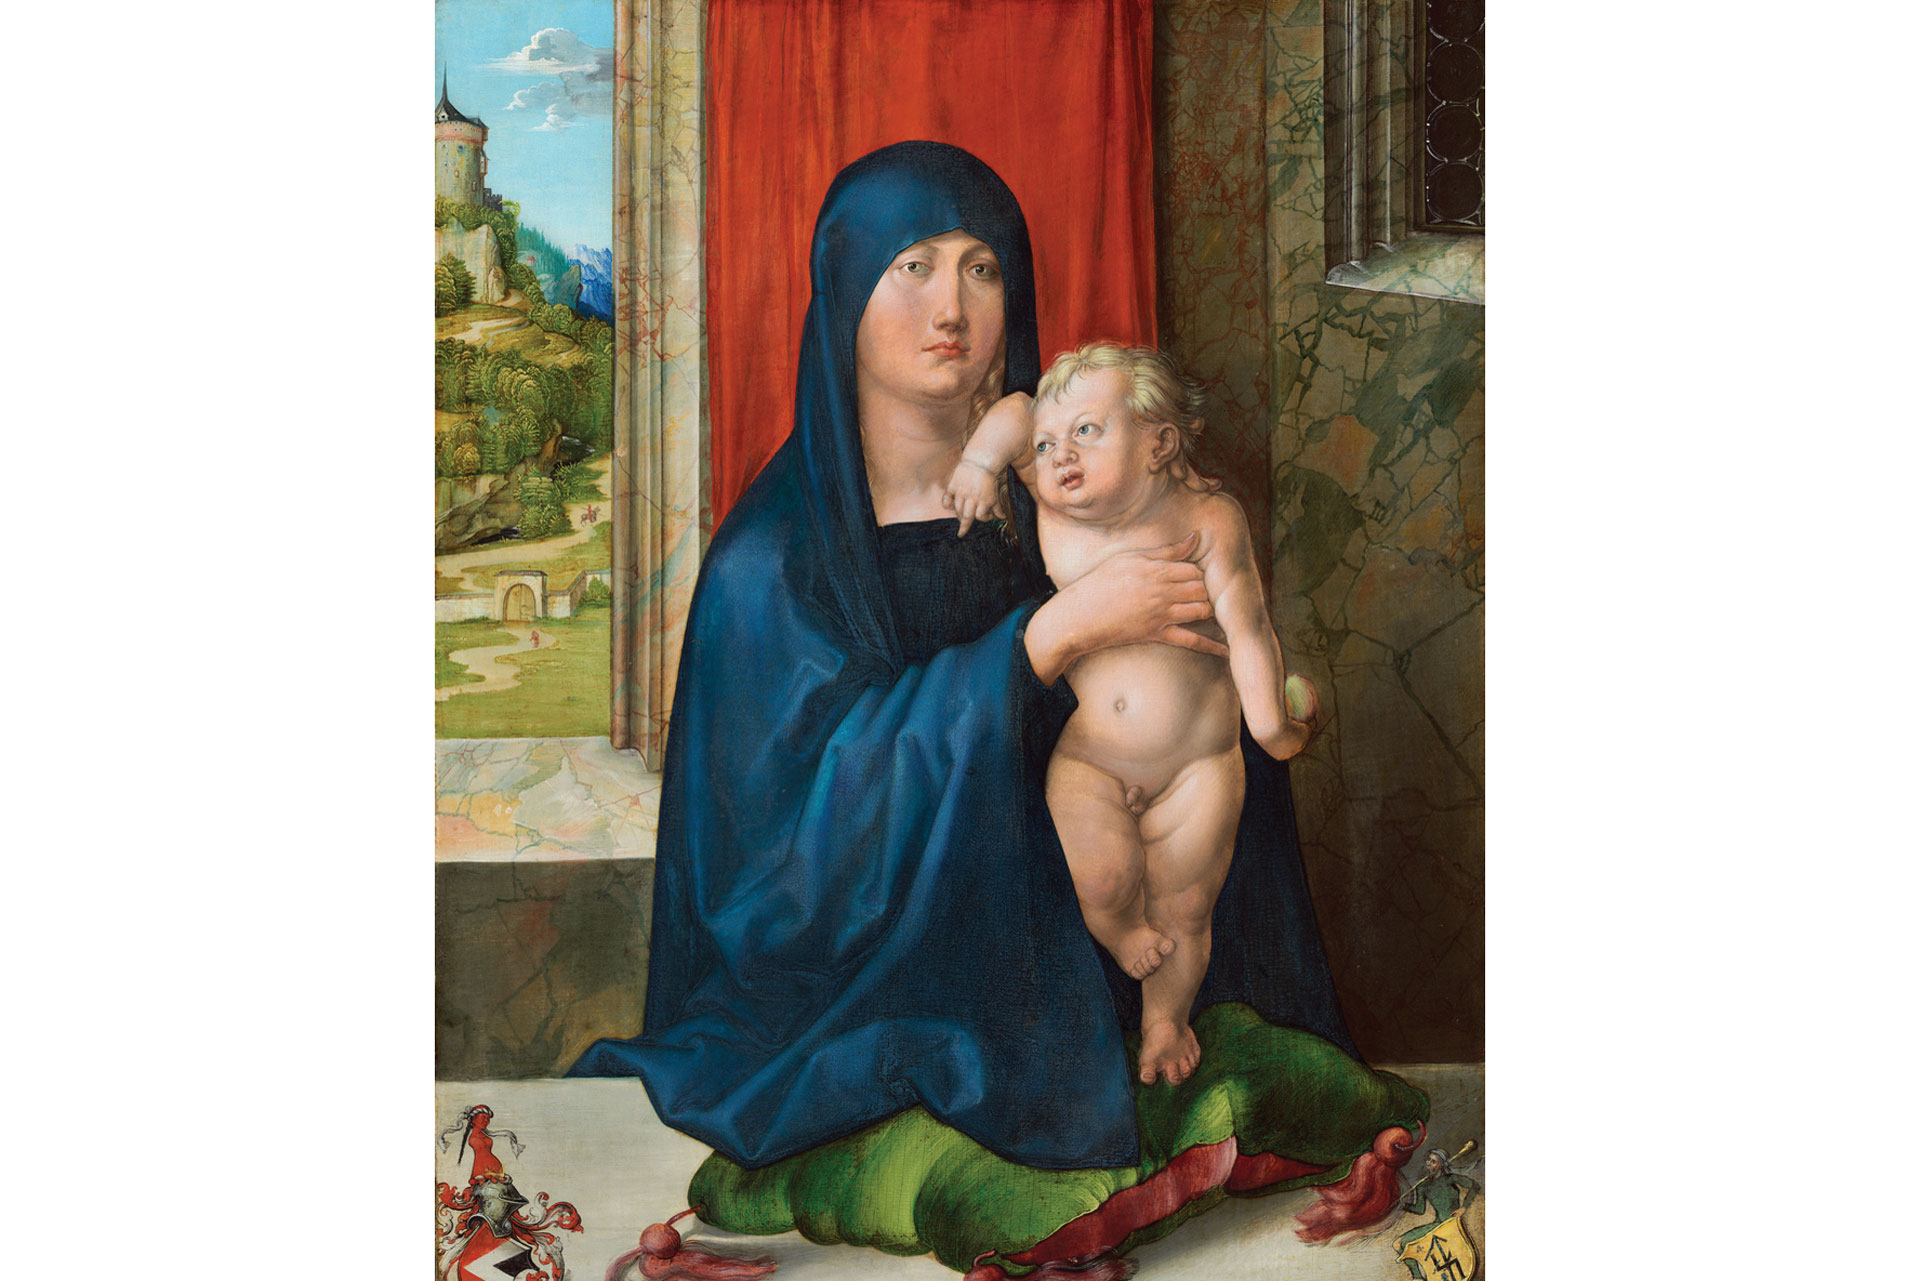 Catch the Renaissance works of Albrecht Dürer at the National Gallery 